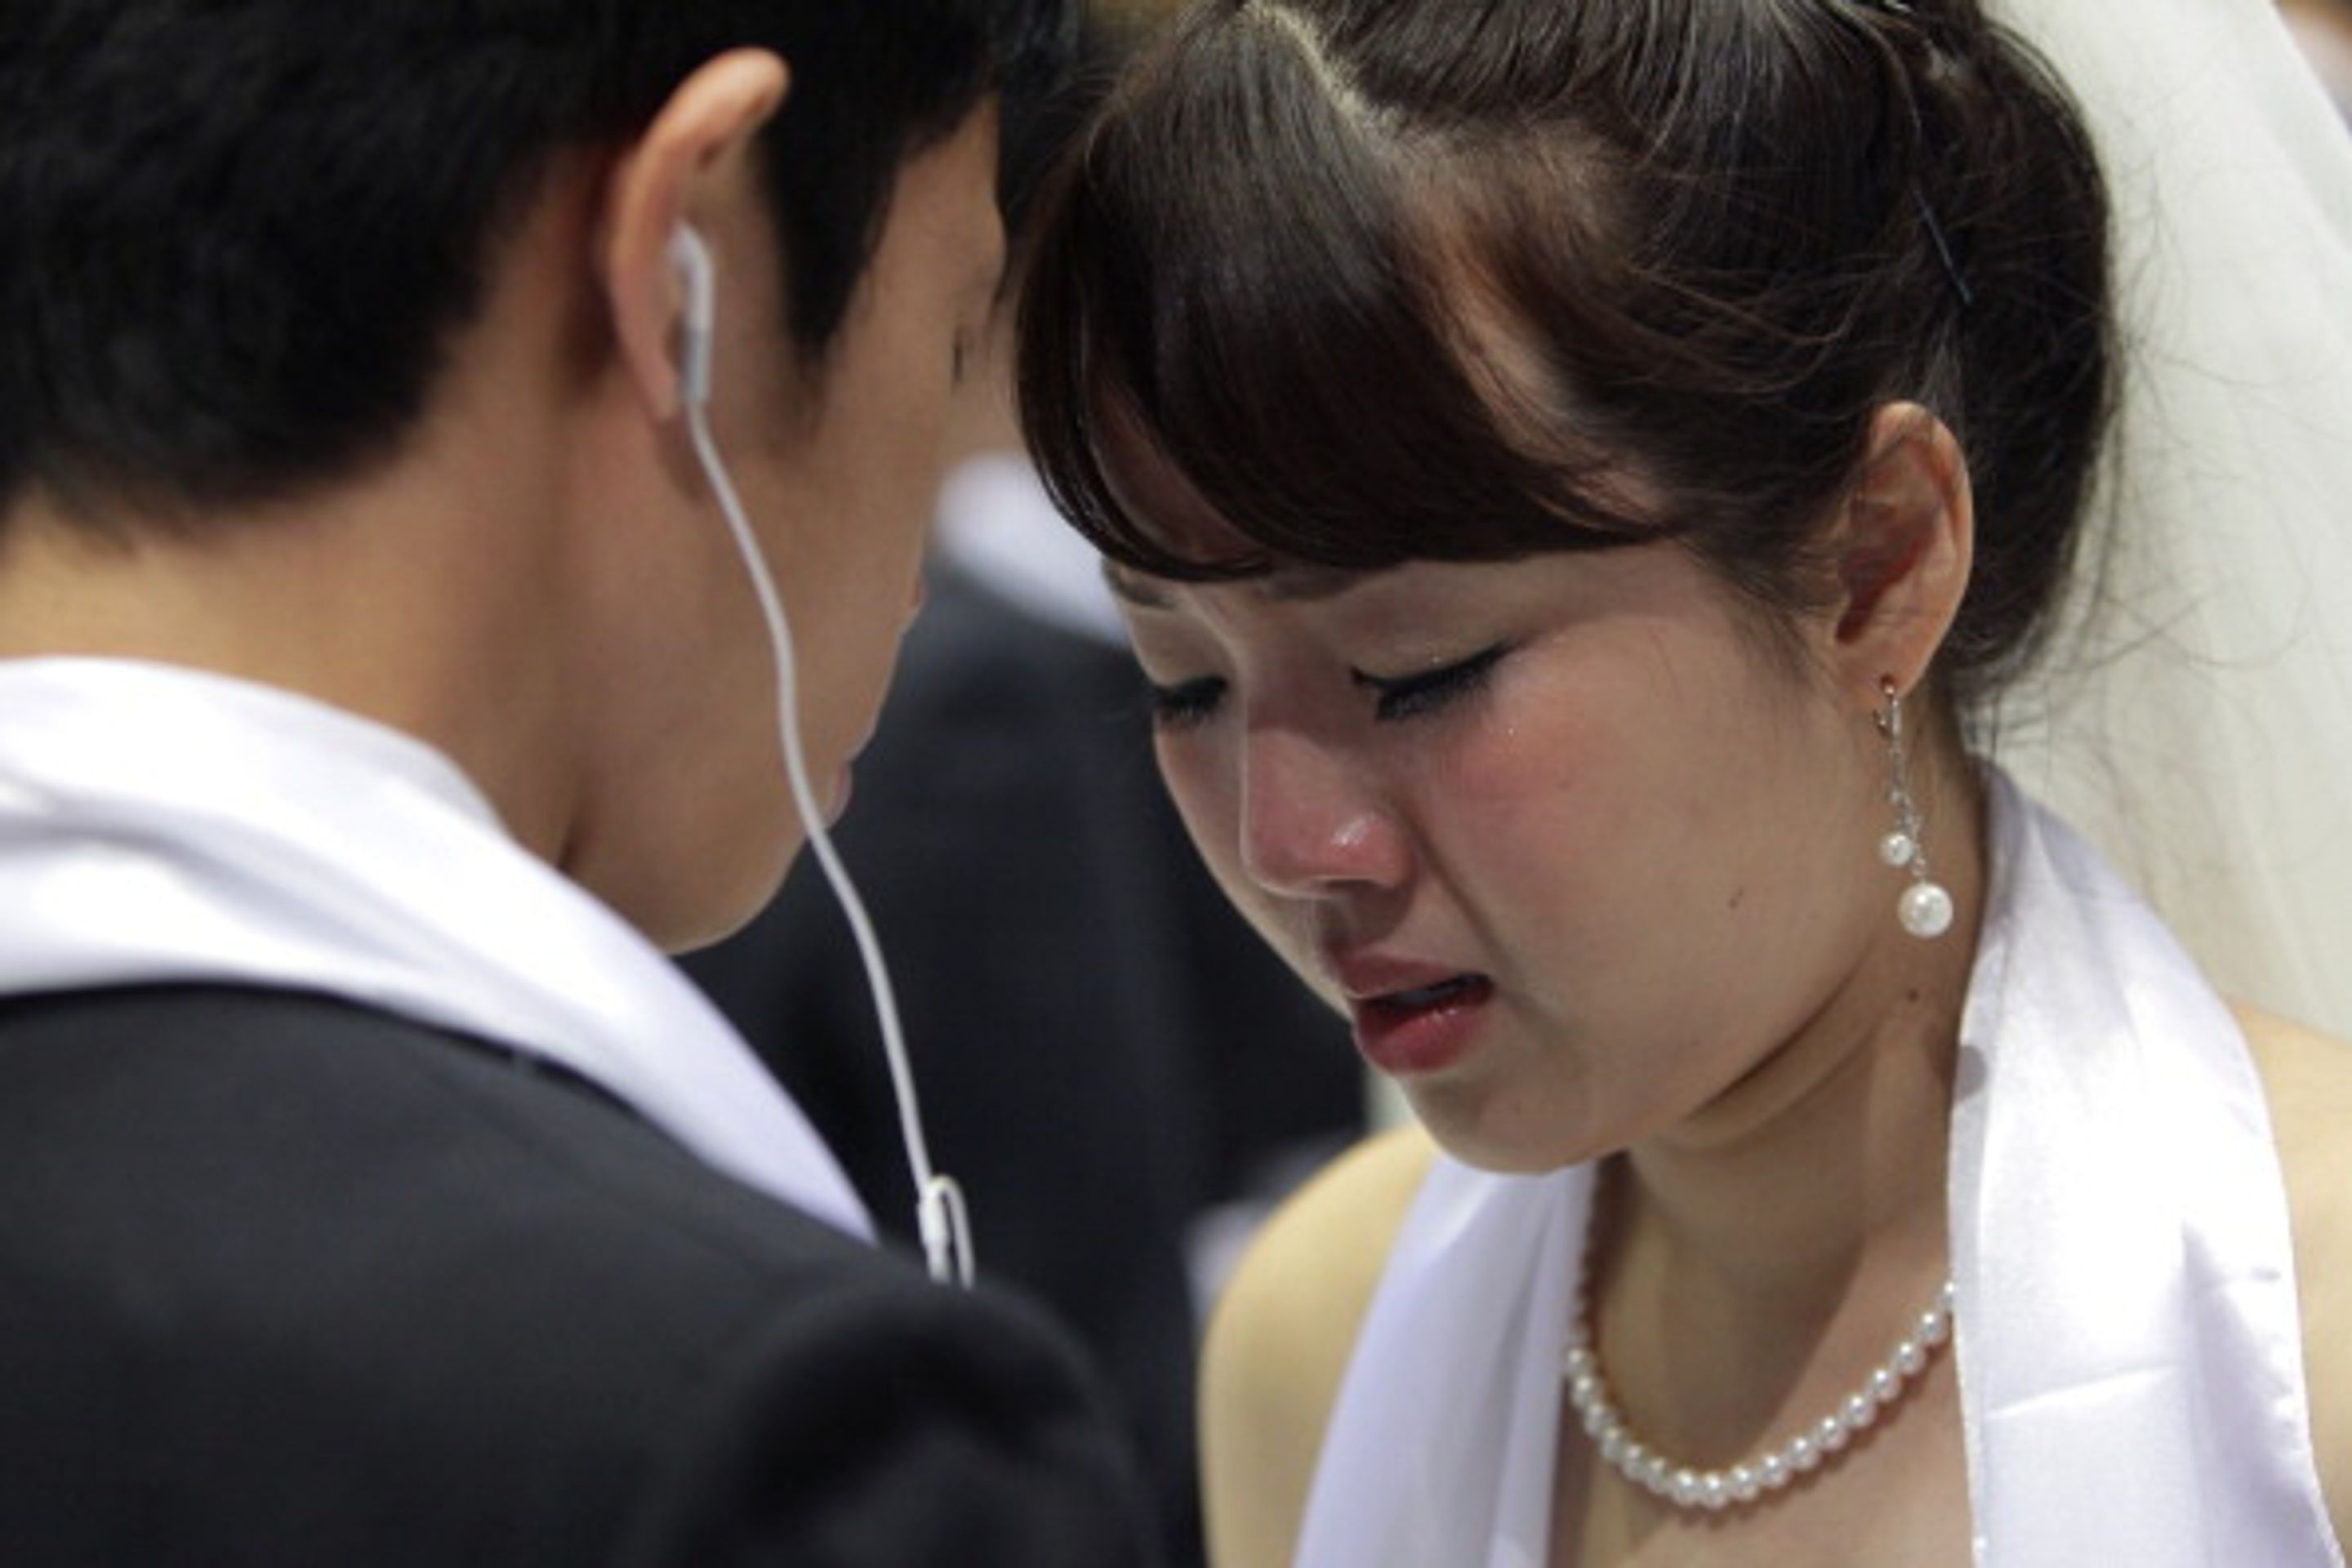 Hromadná svatba v Jižní Koreji - 3 - Svatba ve velkém stylu: Bralo se 3500 párů najednou! (10/12)